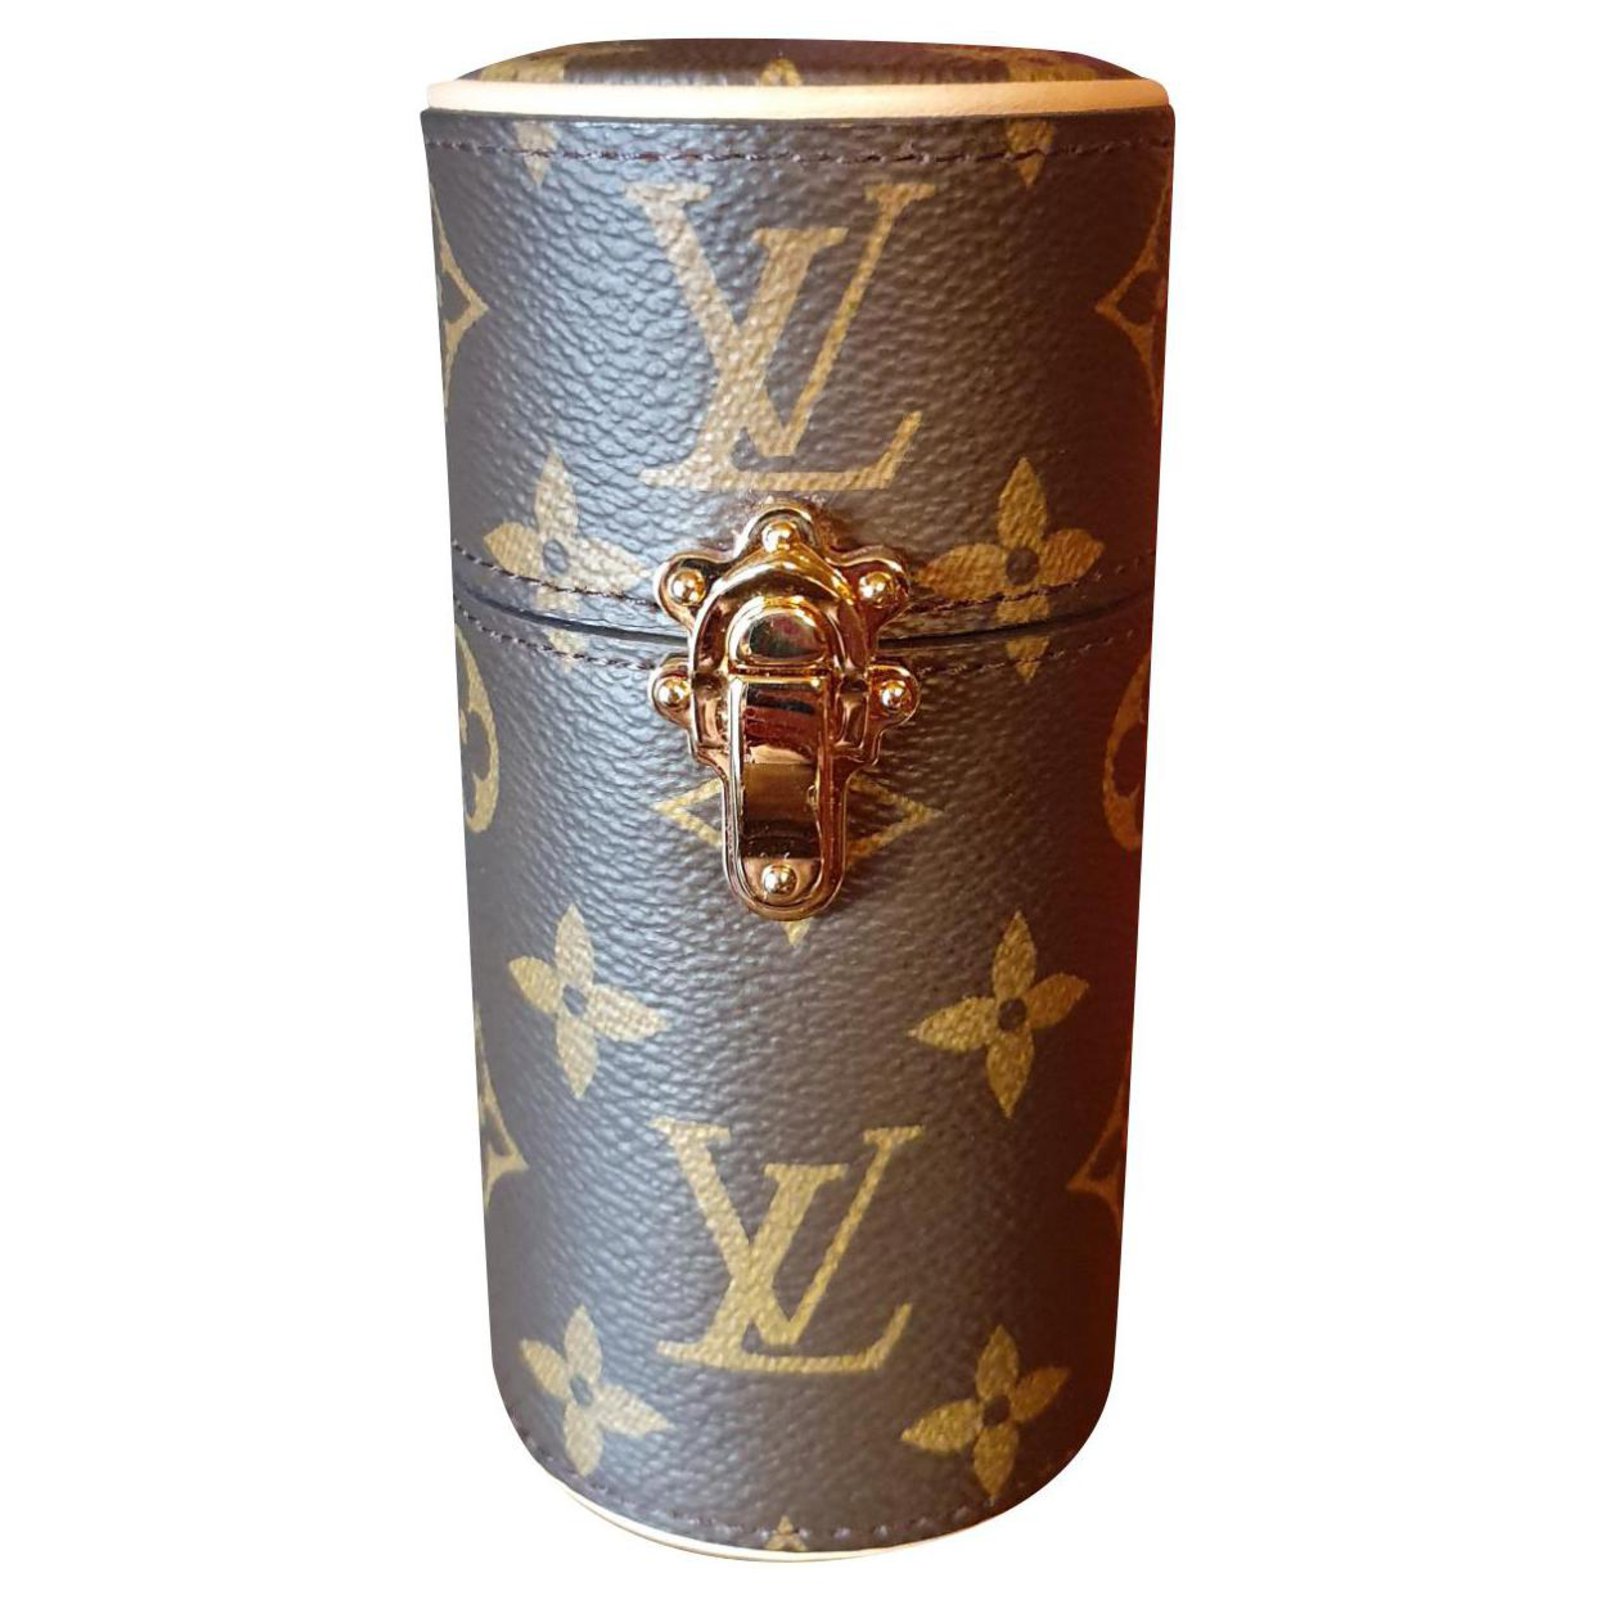 Vuitton lance ses étuis de voyage pour flacons de parfum 